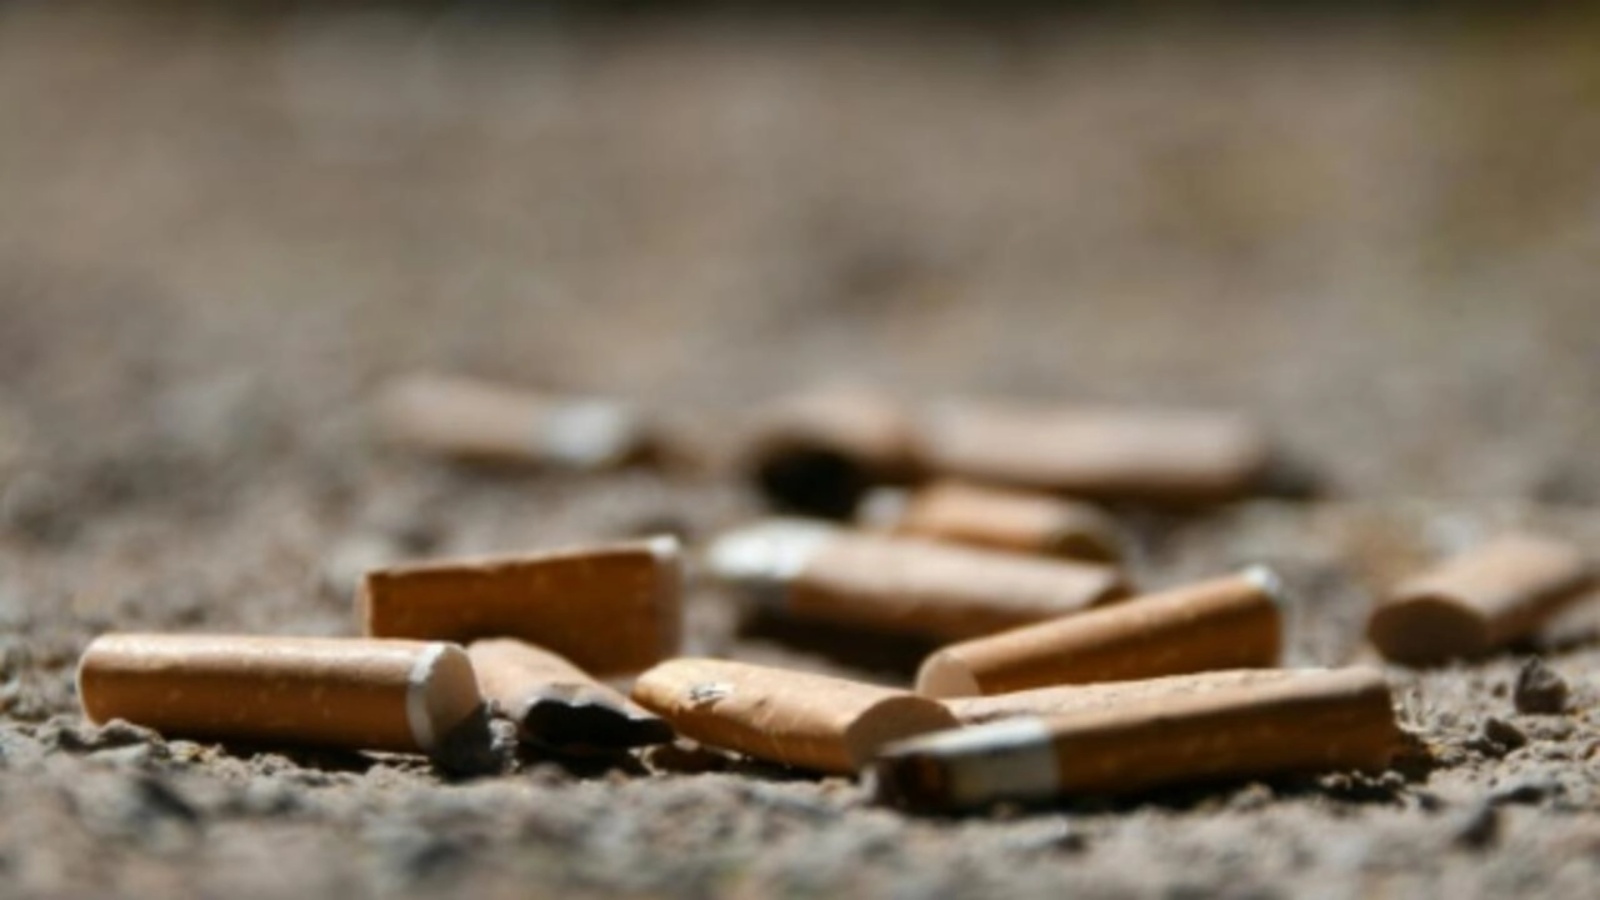 صناعة التبغ تسبب ضرراً بيئياً كبيراً نتيجة التلوث والانبعاثات التي تساهم في تغير المناخ